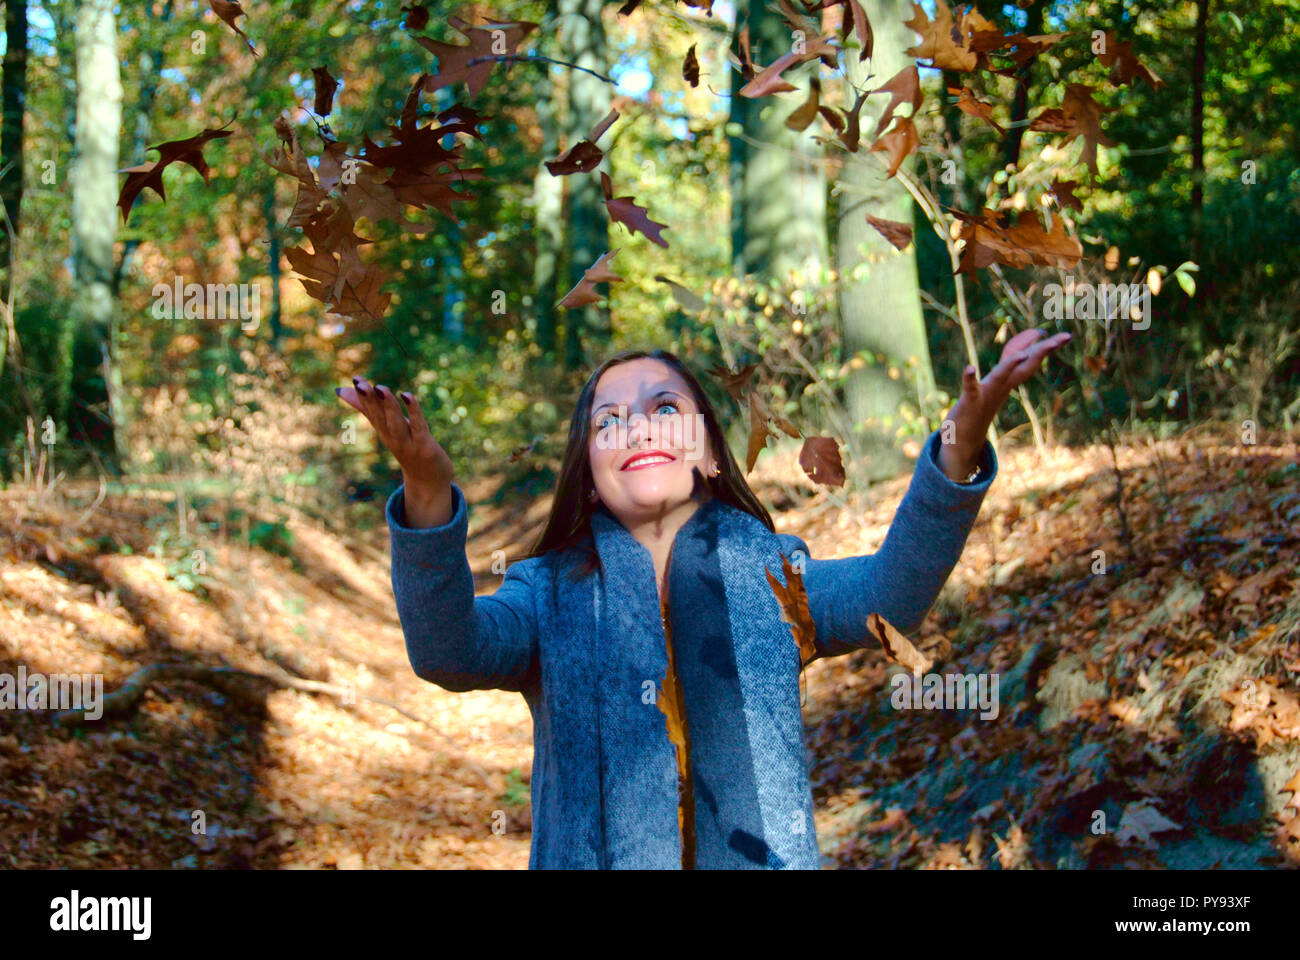 Une belle femme joue avec les feuilles dans la forêt de Duisburg en Allemagne, tandis que la saison des changements à l'automne Banque D'Images